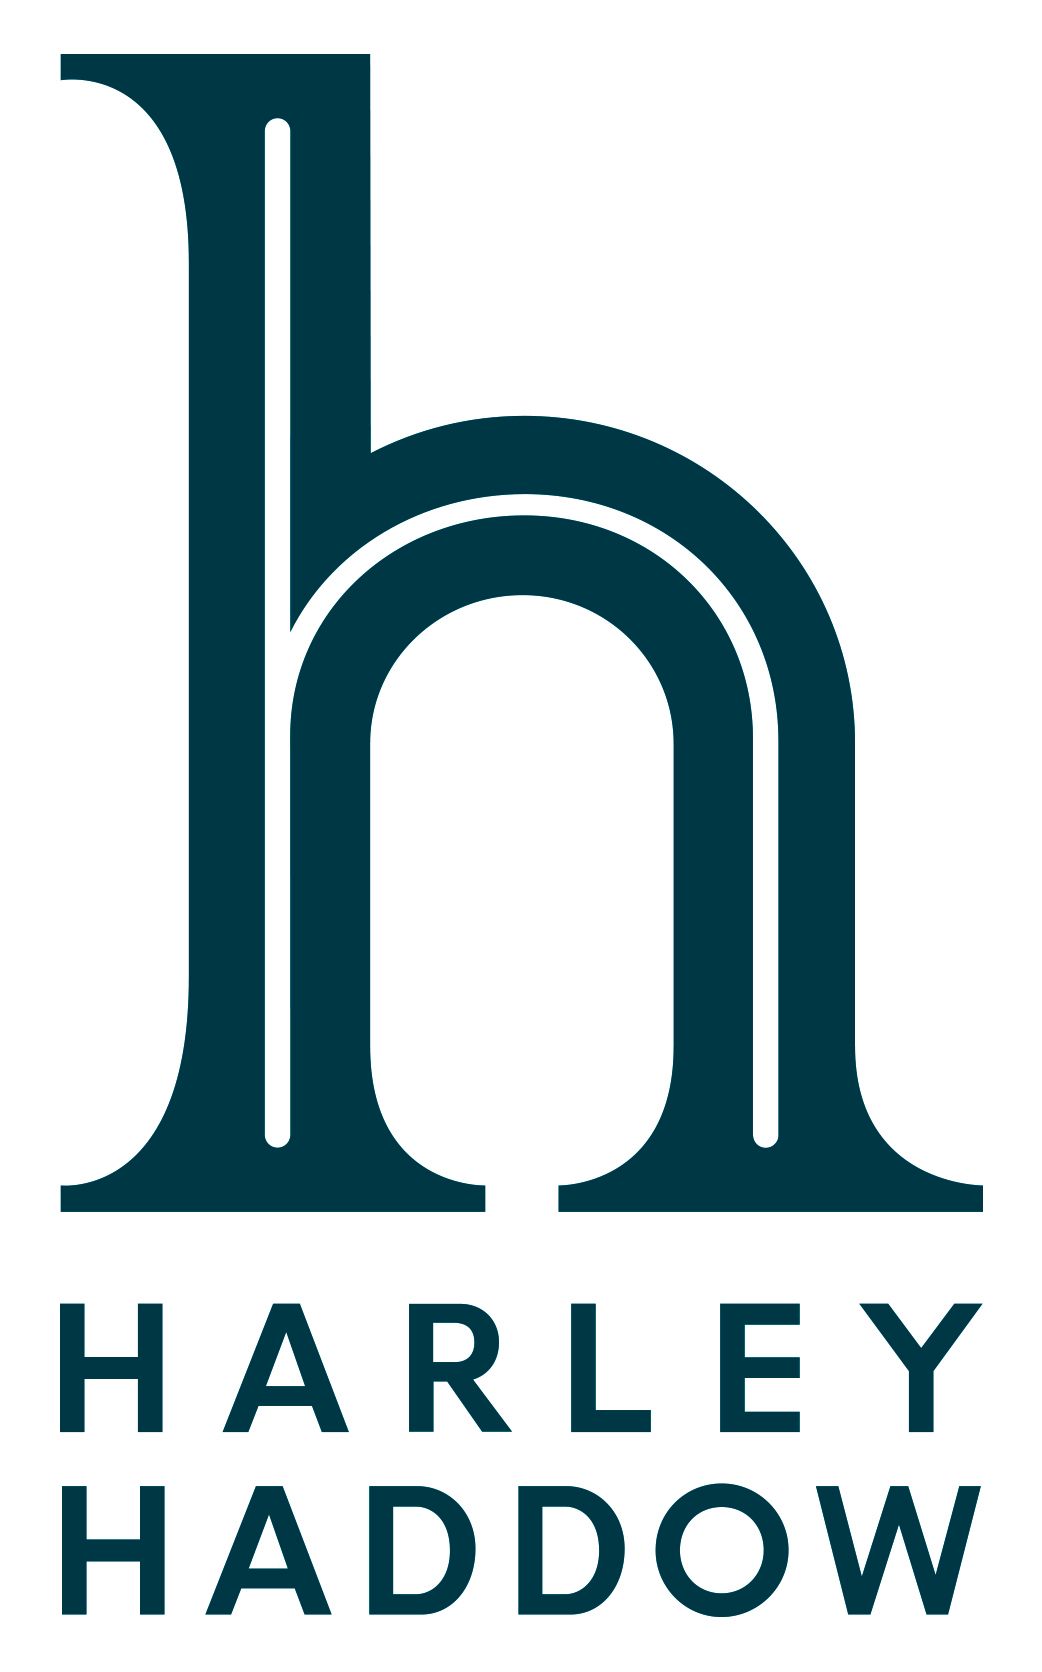 Harley Haddow